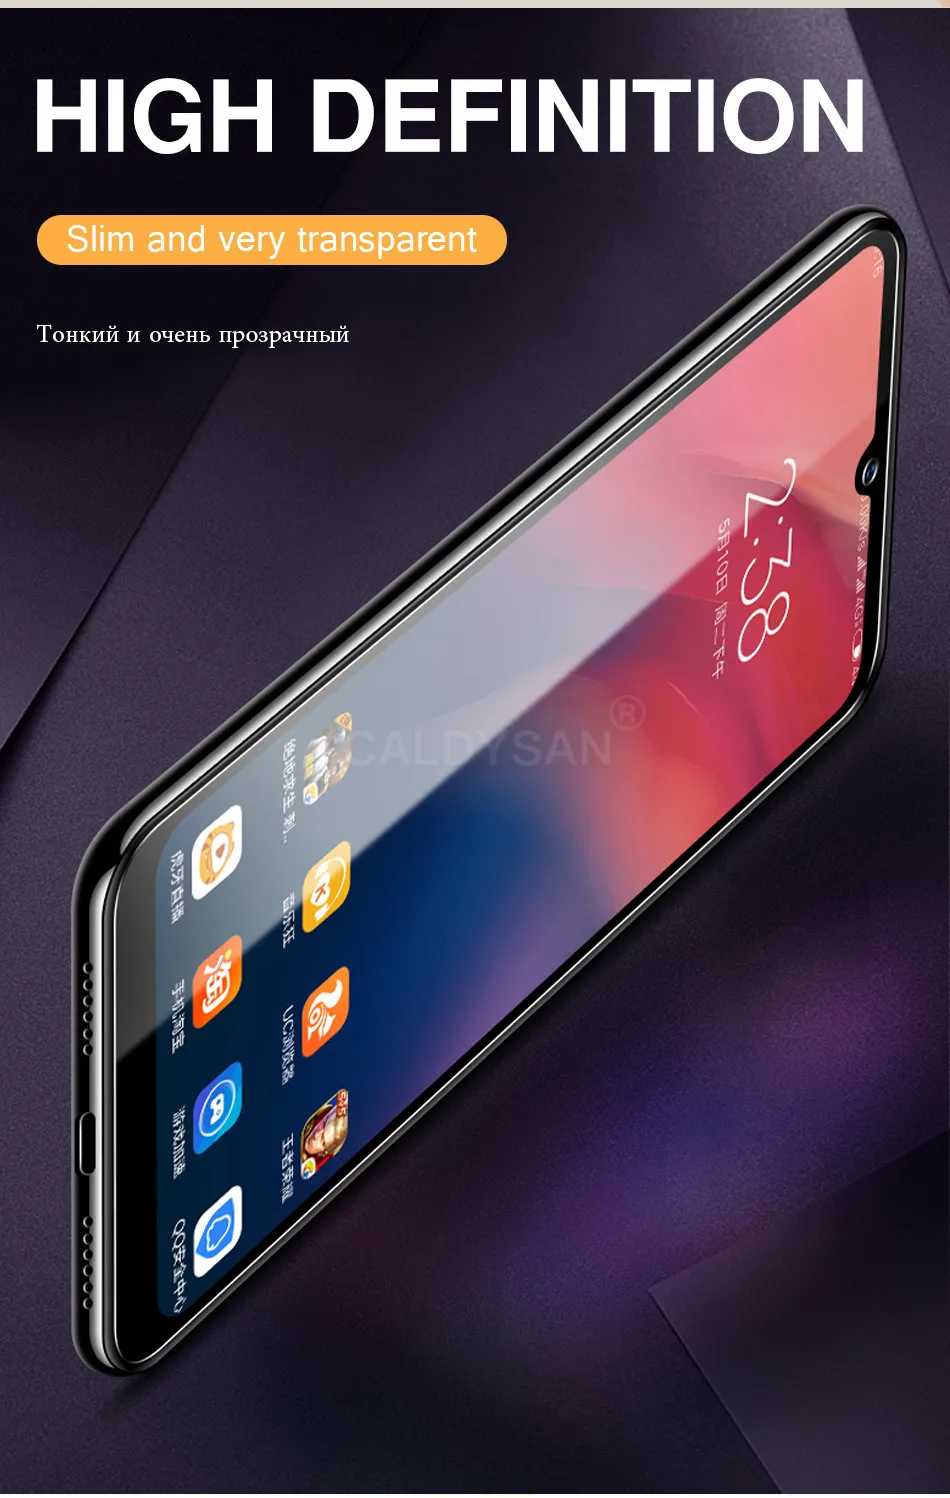 3 шт полное защитное закаленное стекло для Xiaomi Redmi 5 5A Plus 6 6A Pro Note 5 6 7 7A K20 Премиум Защитная пленка для экрана